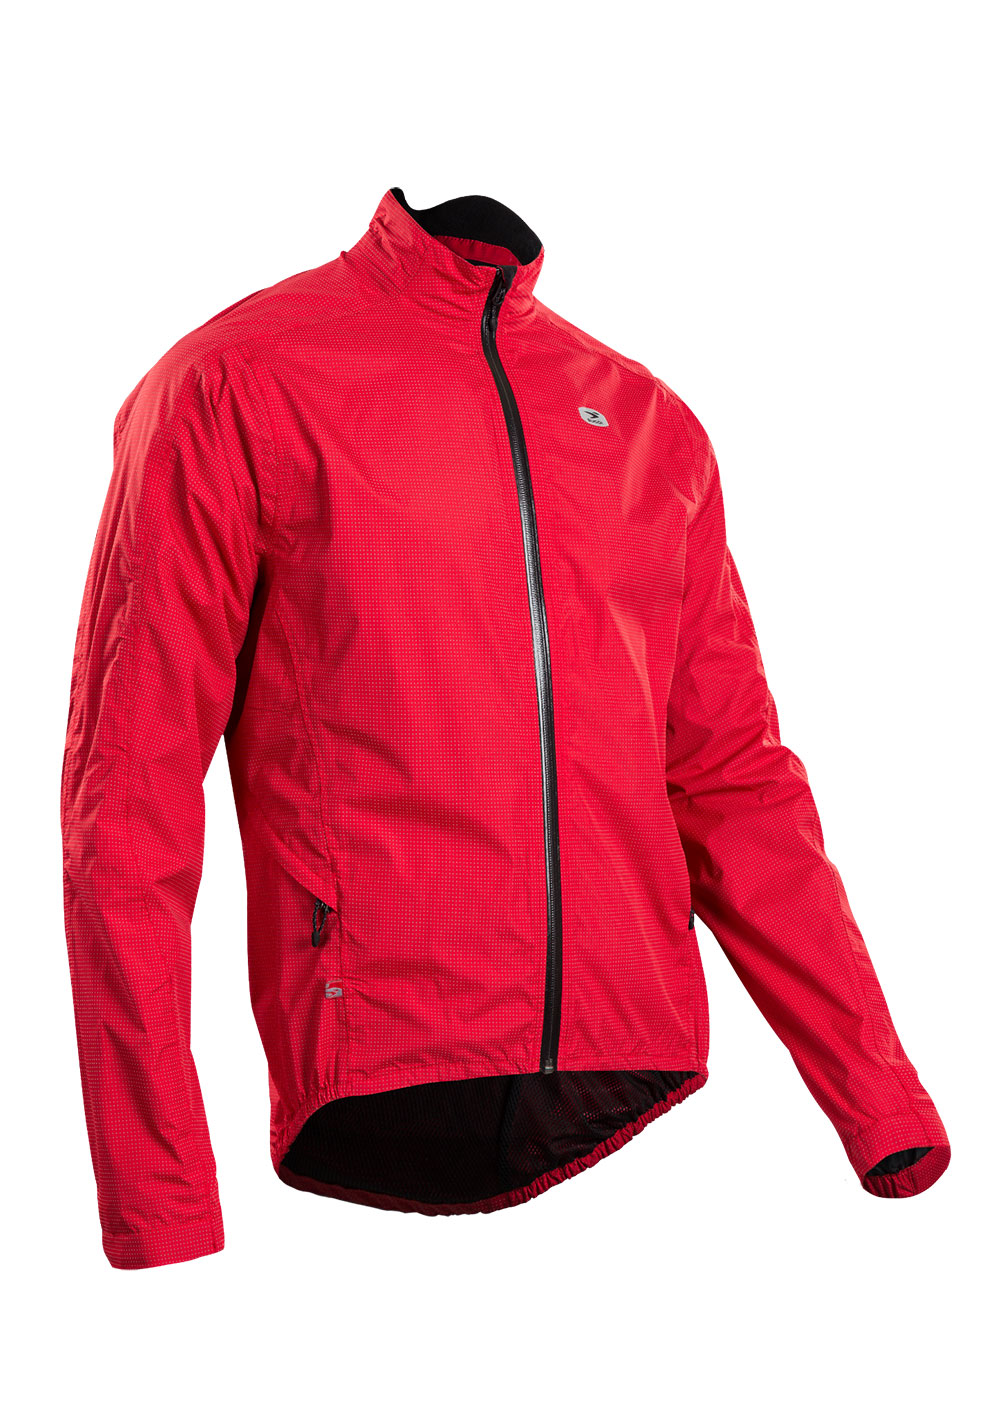 Куртка Sugoi ZAP BIKE, светоотражающая ткань, мужская, CHI (красная), M фото 